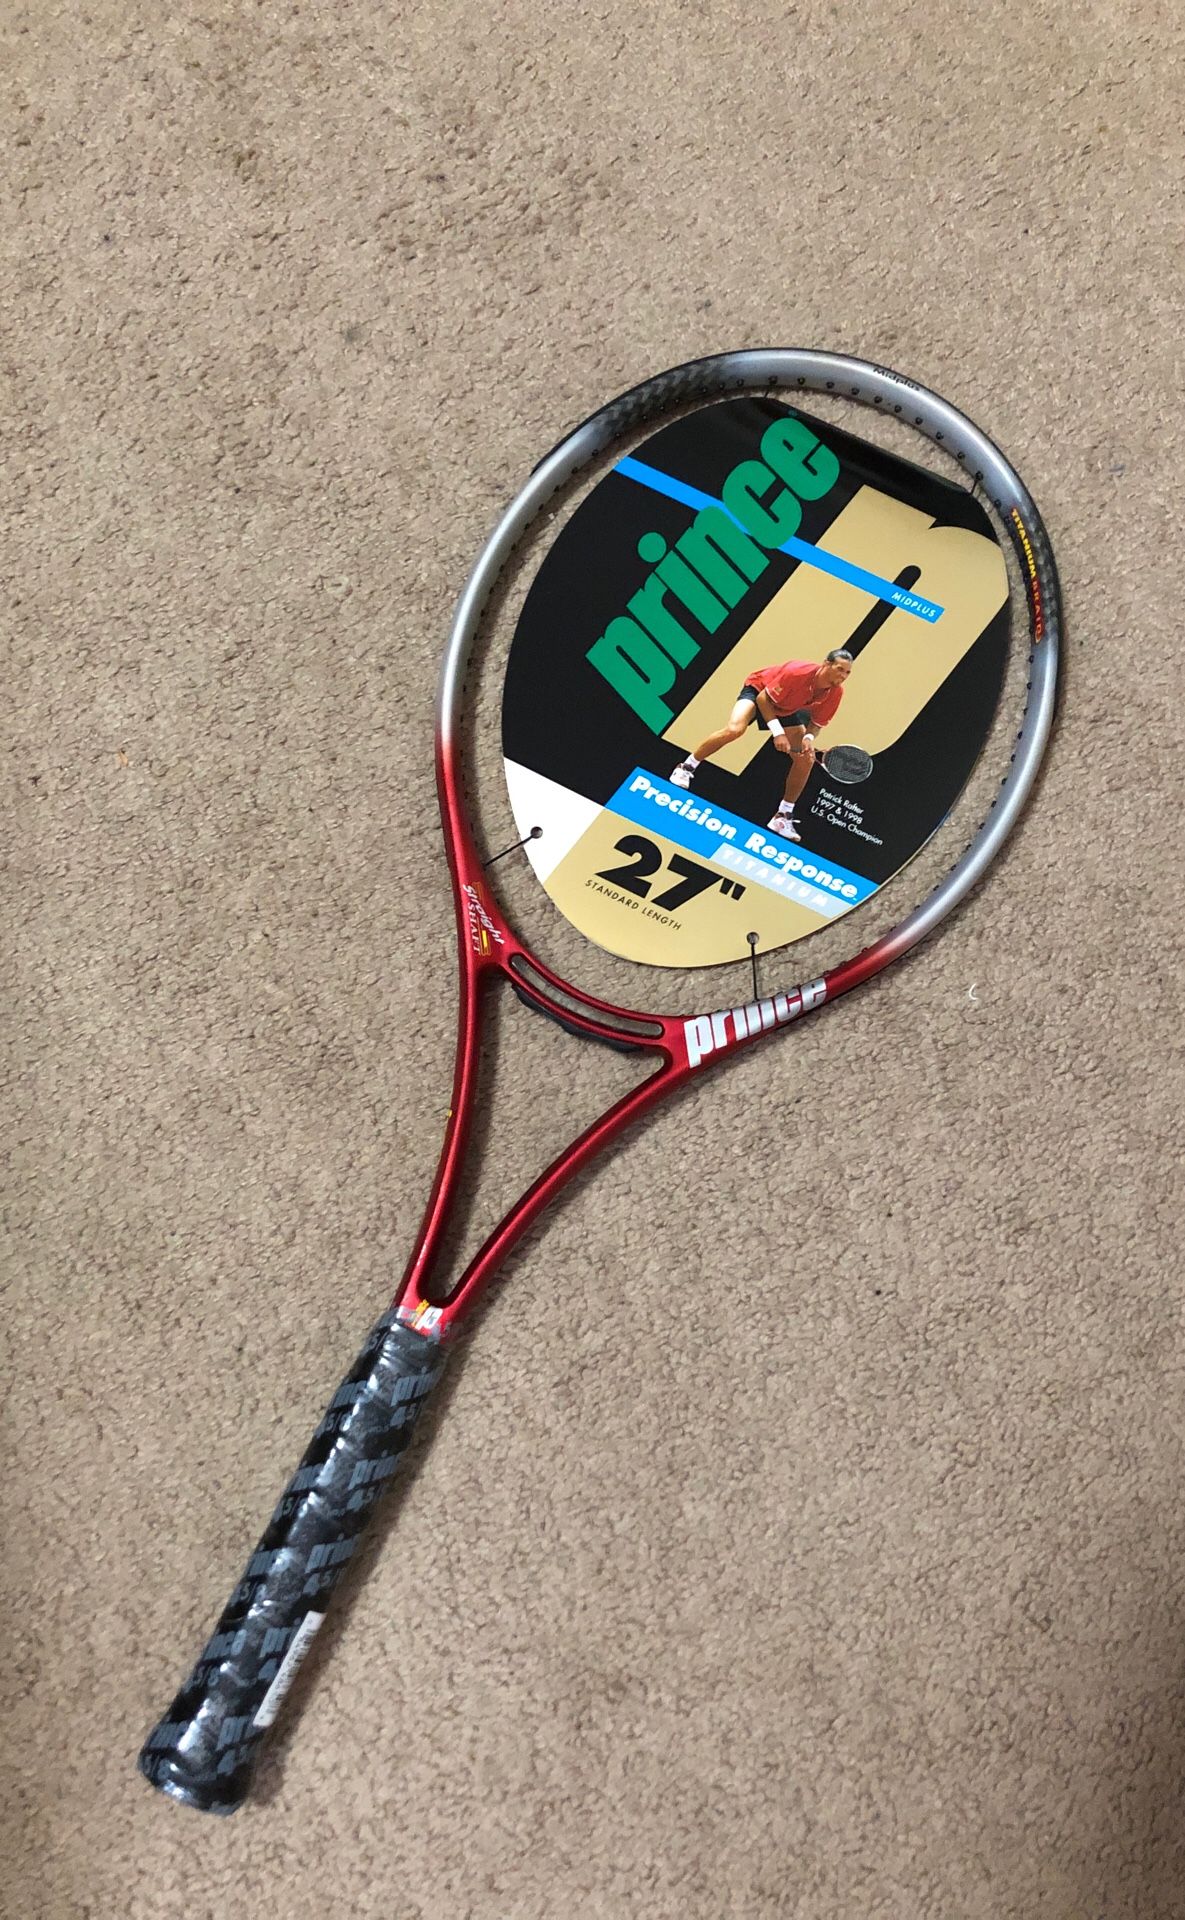 Tennis racket no strings